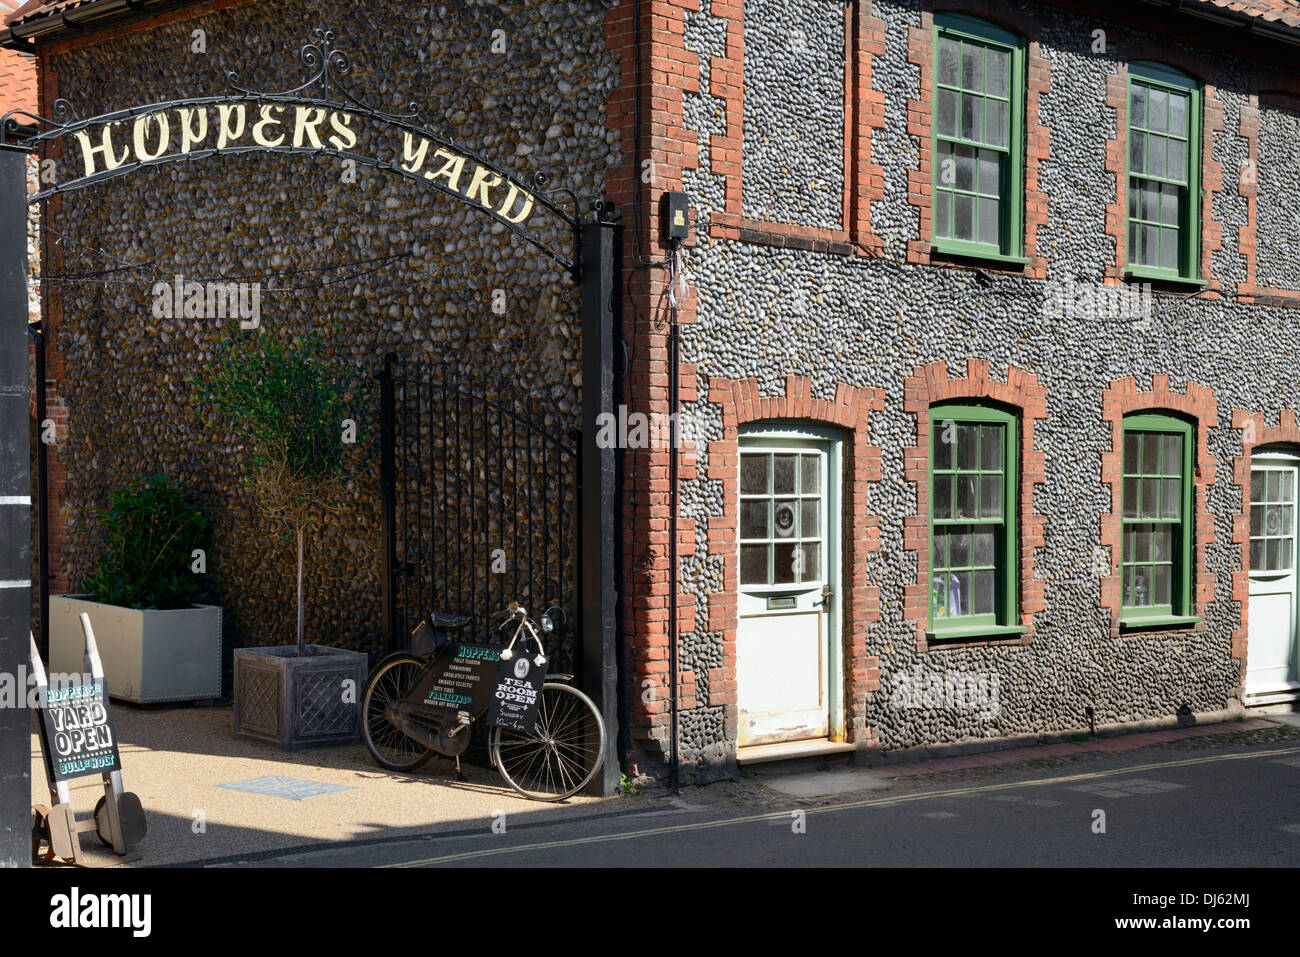 Entrance to Hoppers Yard shops and cafes, Holt, Norfolk, England, United Kingdom, UK, Europe Stock Photo